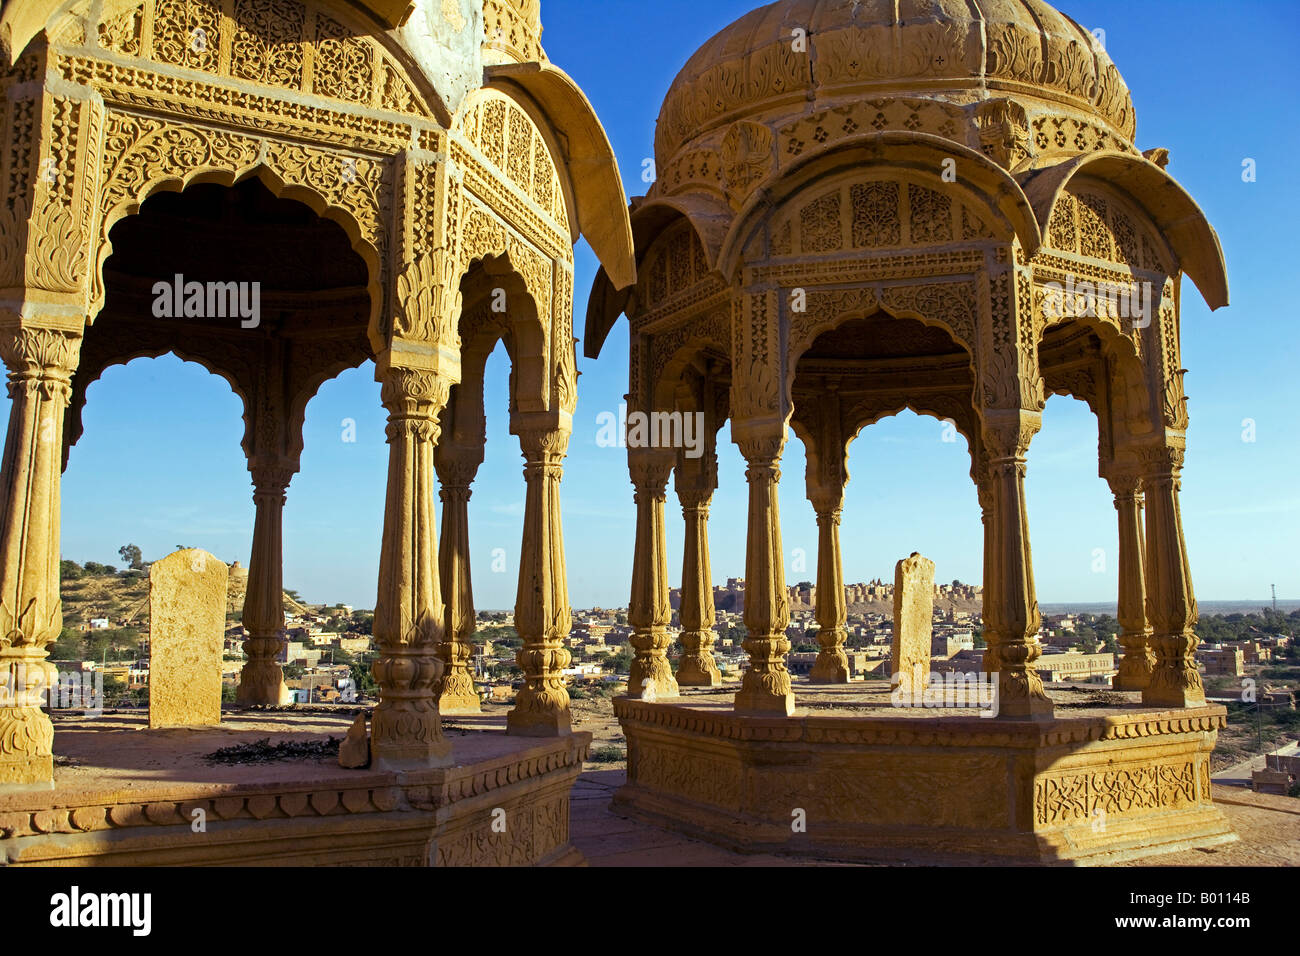 India, Rajasthan, Jaisalmer, Bada Bagh (literally Big Garden). Built by a descendant of Jaisal and maharaja of Jaisalamer. Stock Photo